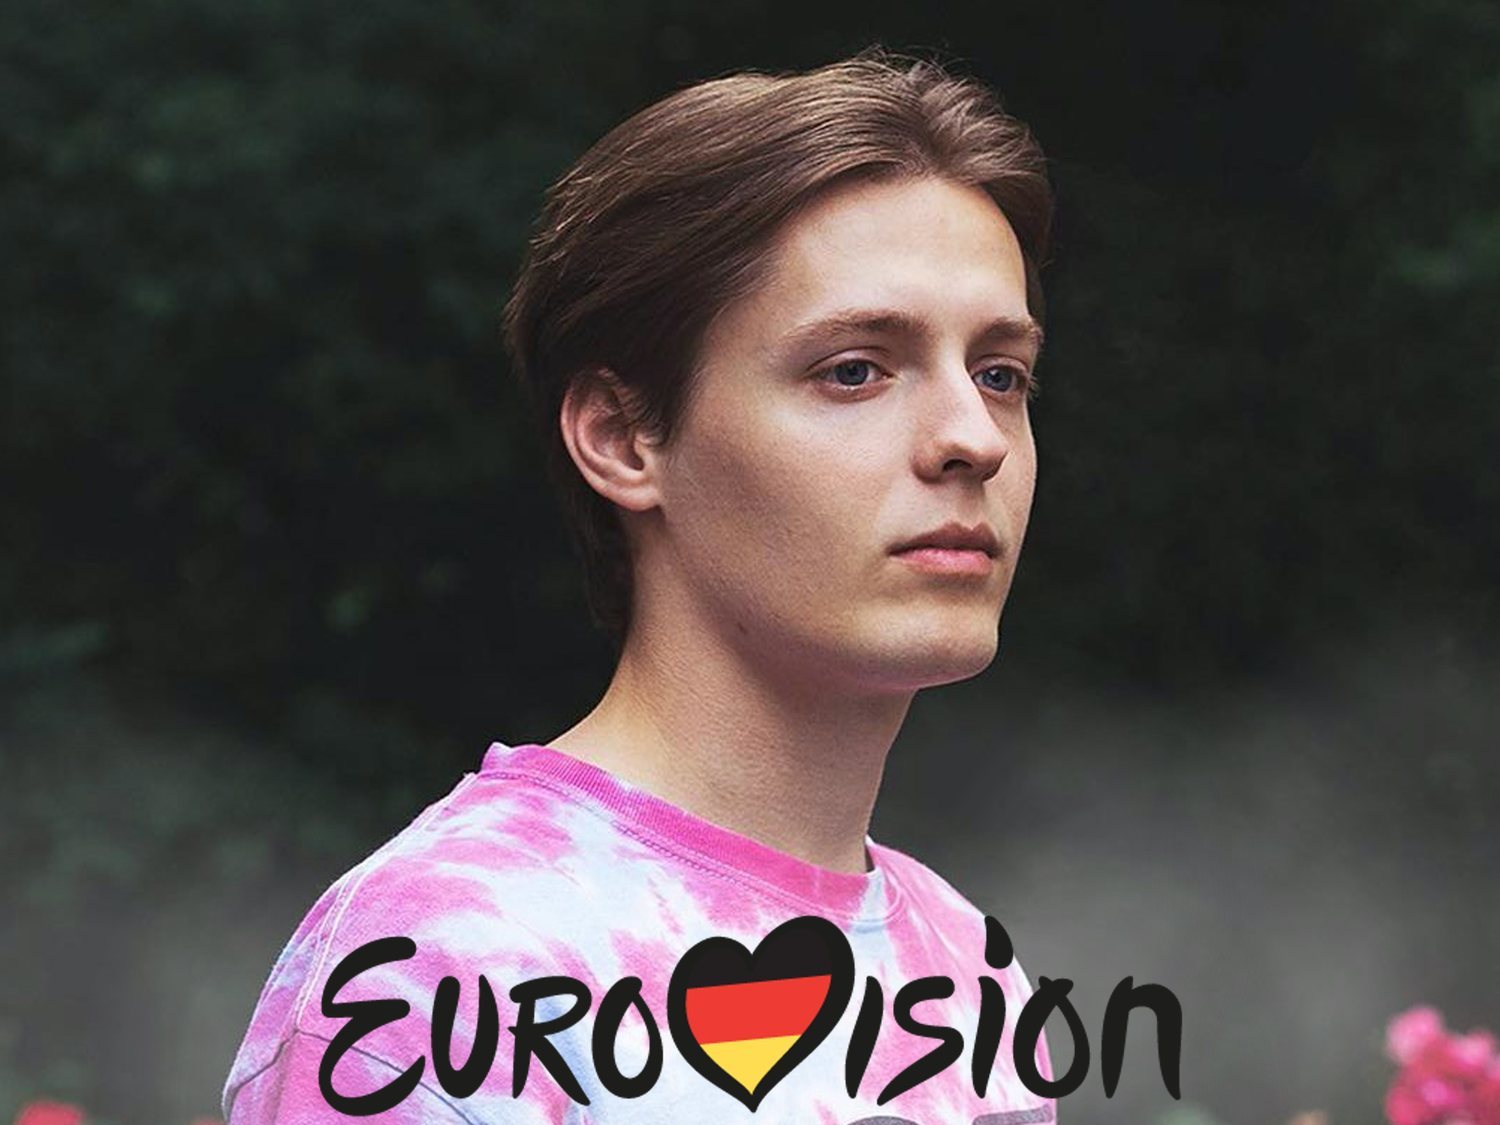 Alemania apuesta fuerte por Eurovisión 2020 eligiendo al esloveno Ben Dolic